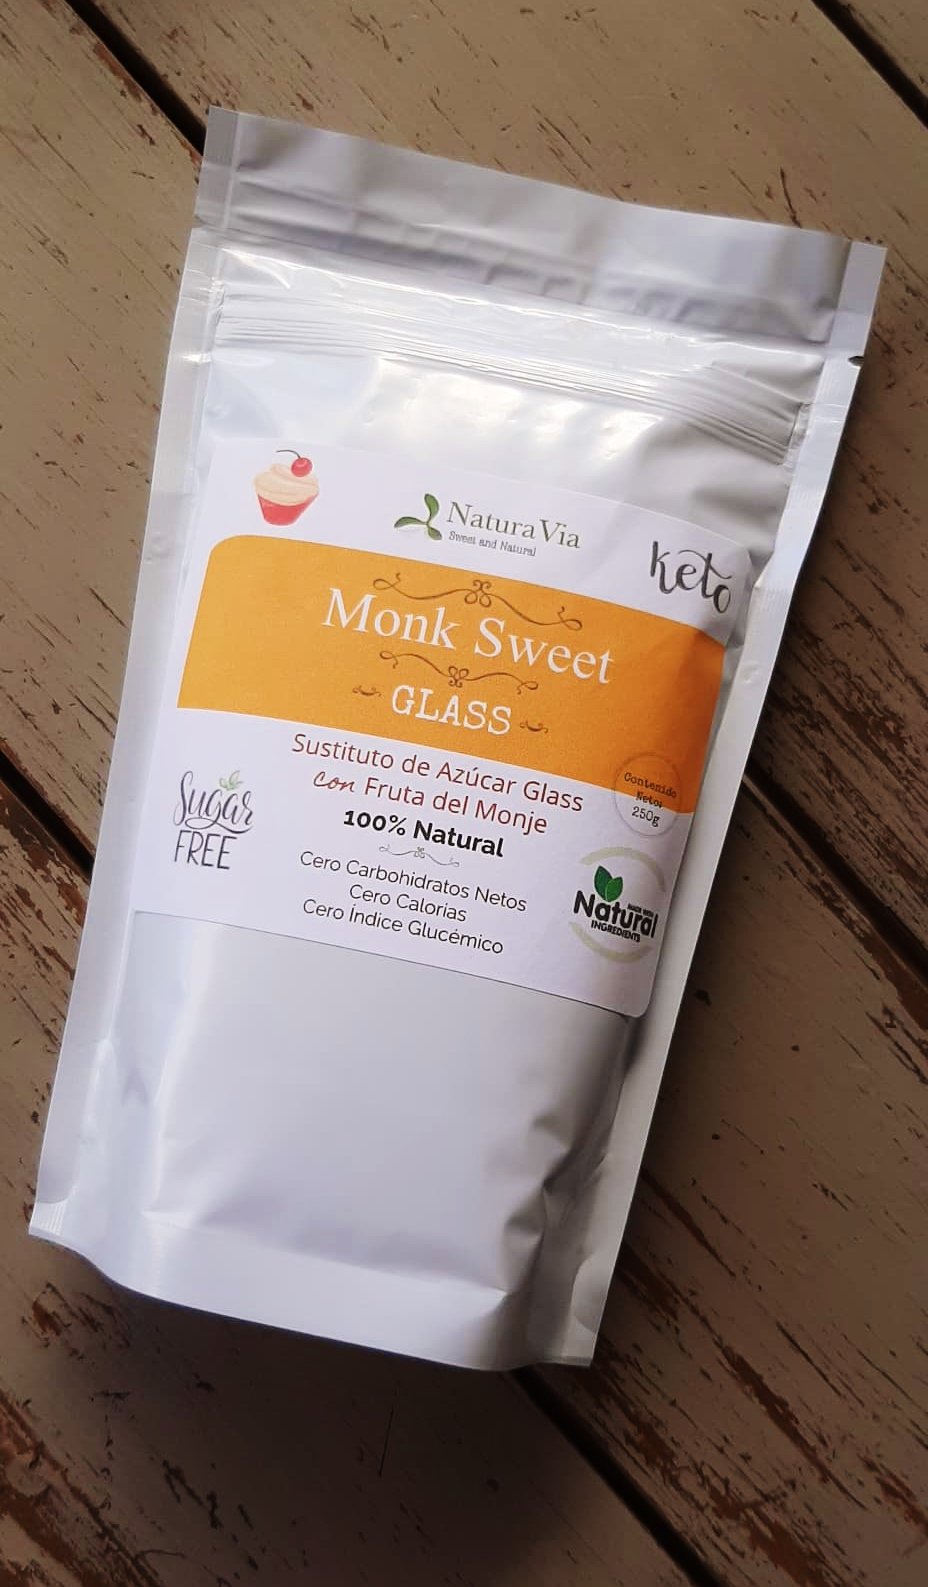 Monk Sweet GLASS - Sustituto de azúcar glass sin calorías